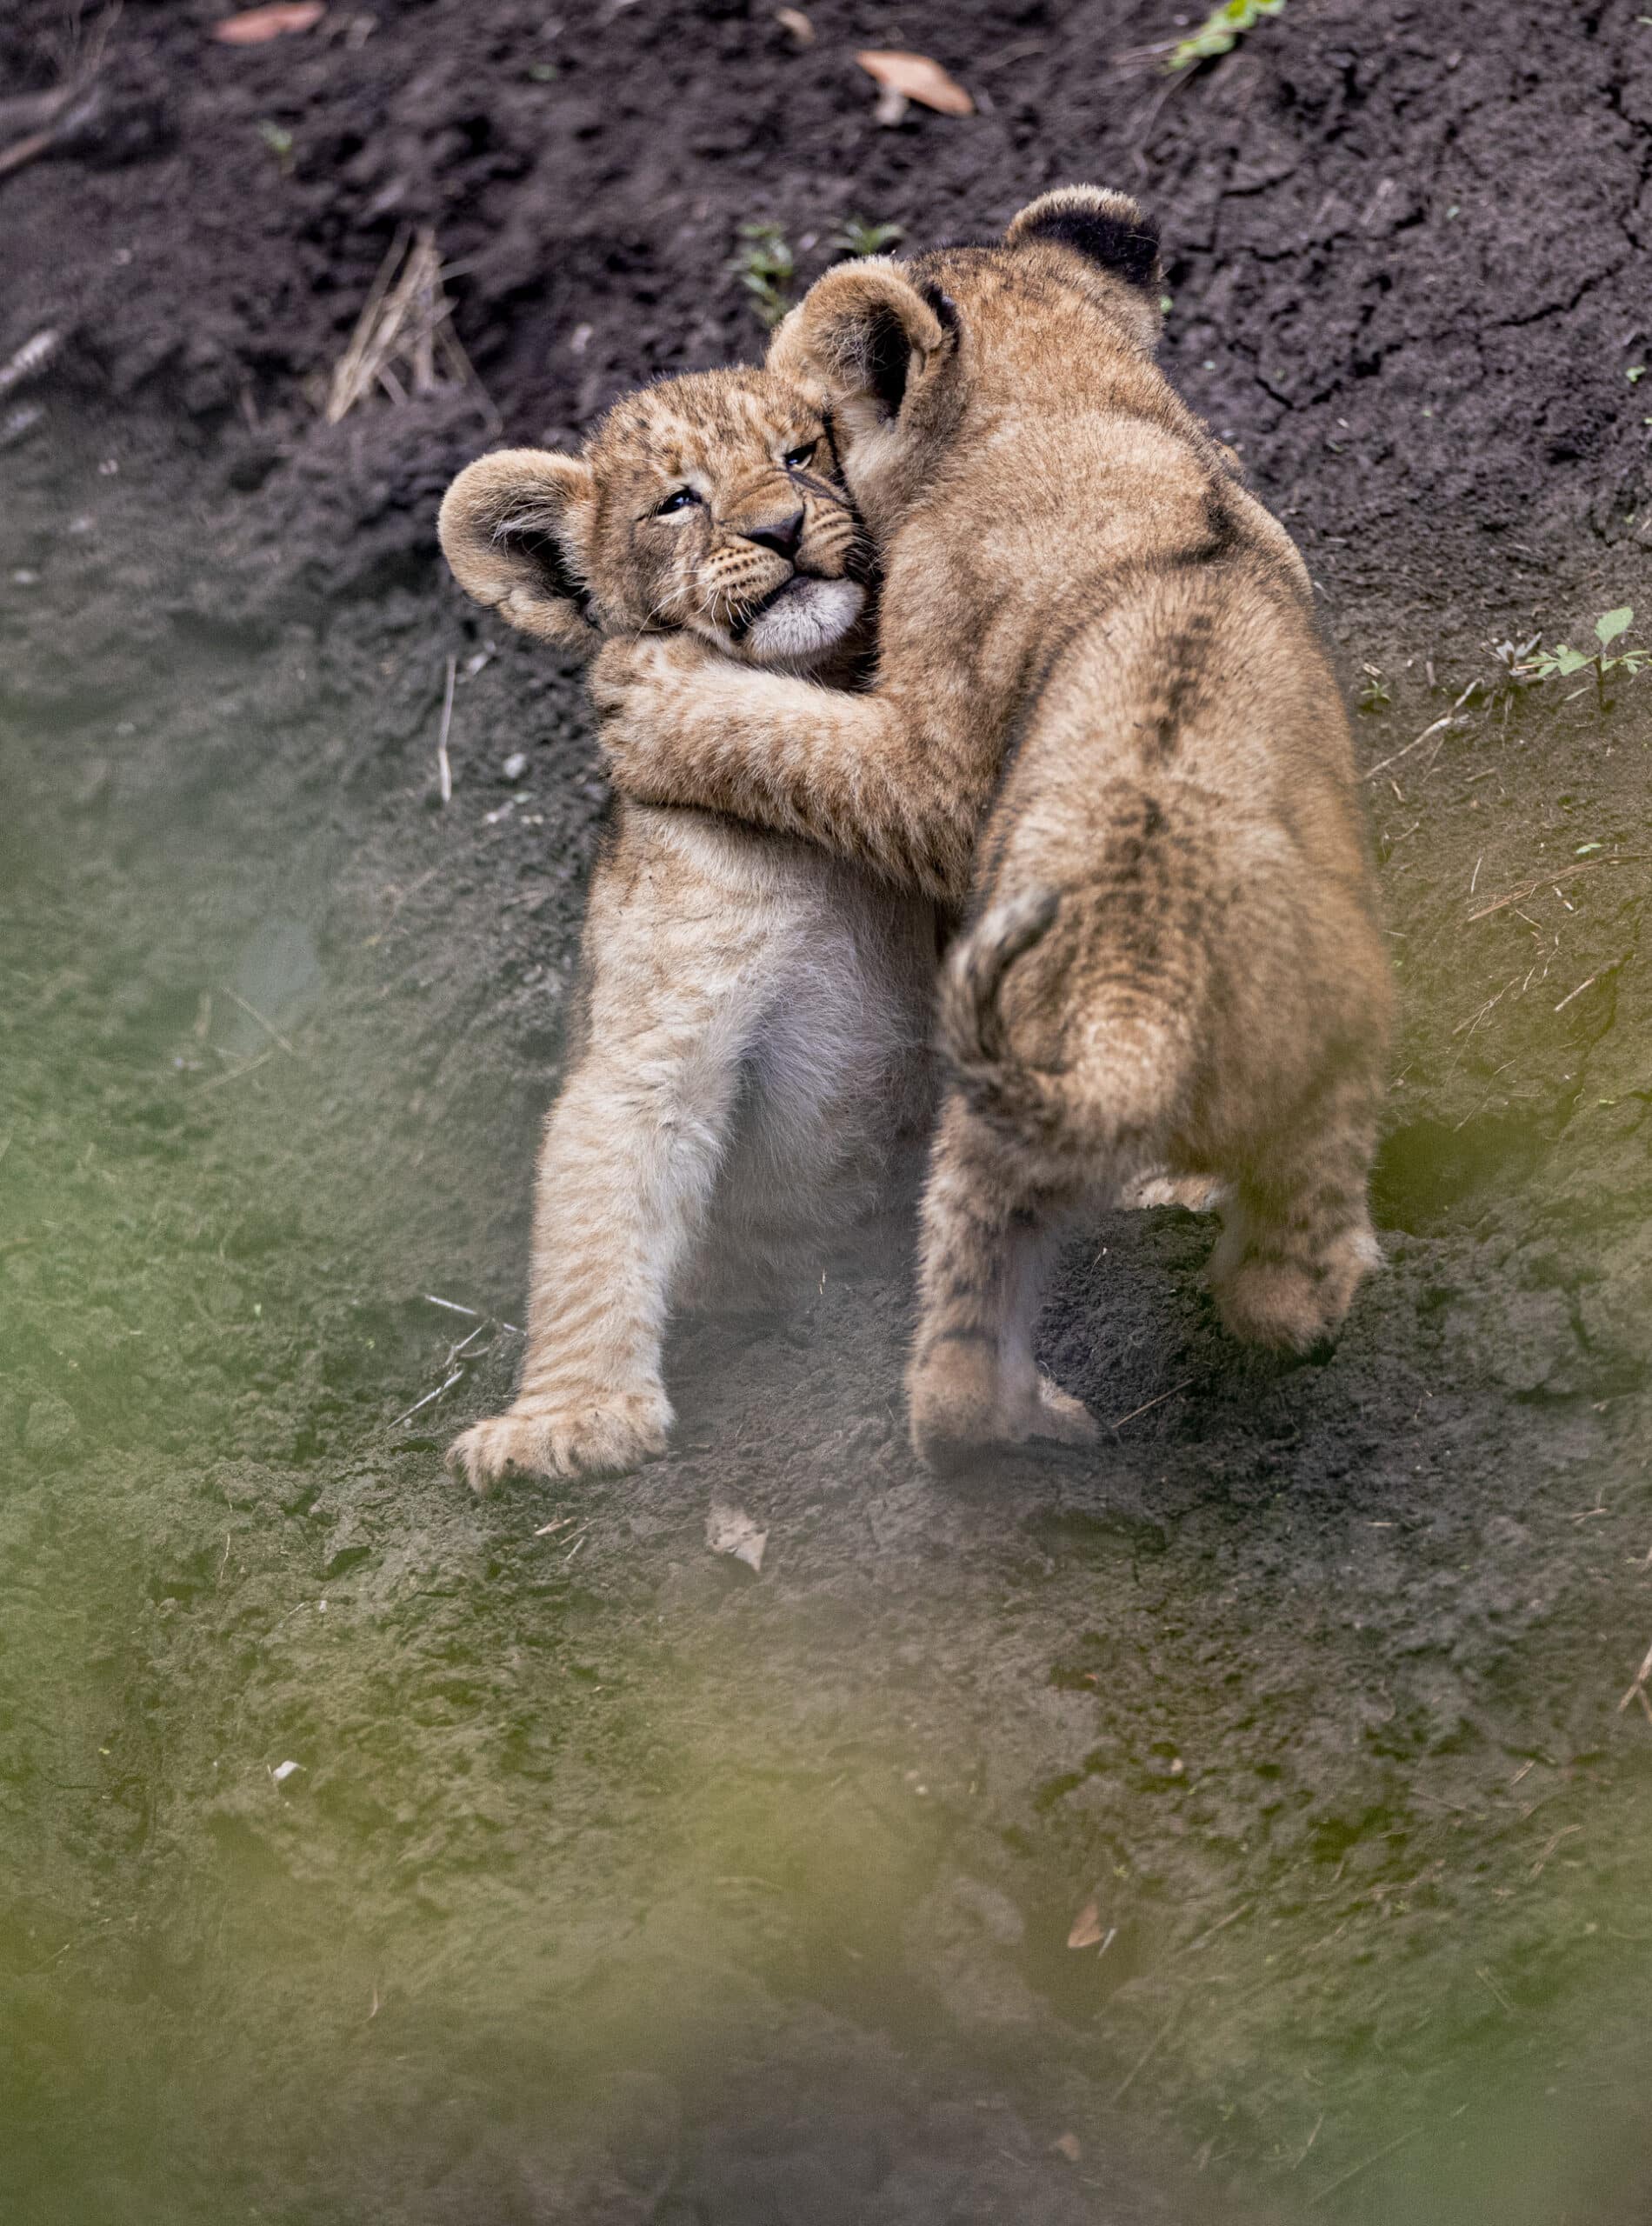 Zwei Löwenjunge umarmen sich spielerisch. Einer klammert sich an den Hals des anderen, ein herzerwärmender Ausdruck geschwisterlicher Zuneigung vor einem weichen, erdigen Hintergrund. © Fotografie Tomas Rodriguez